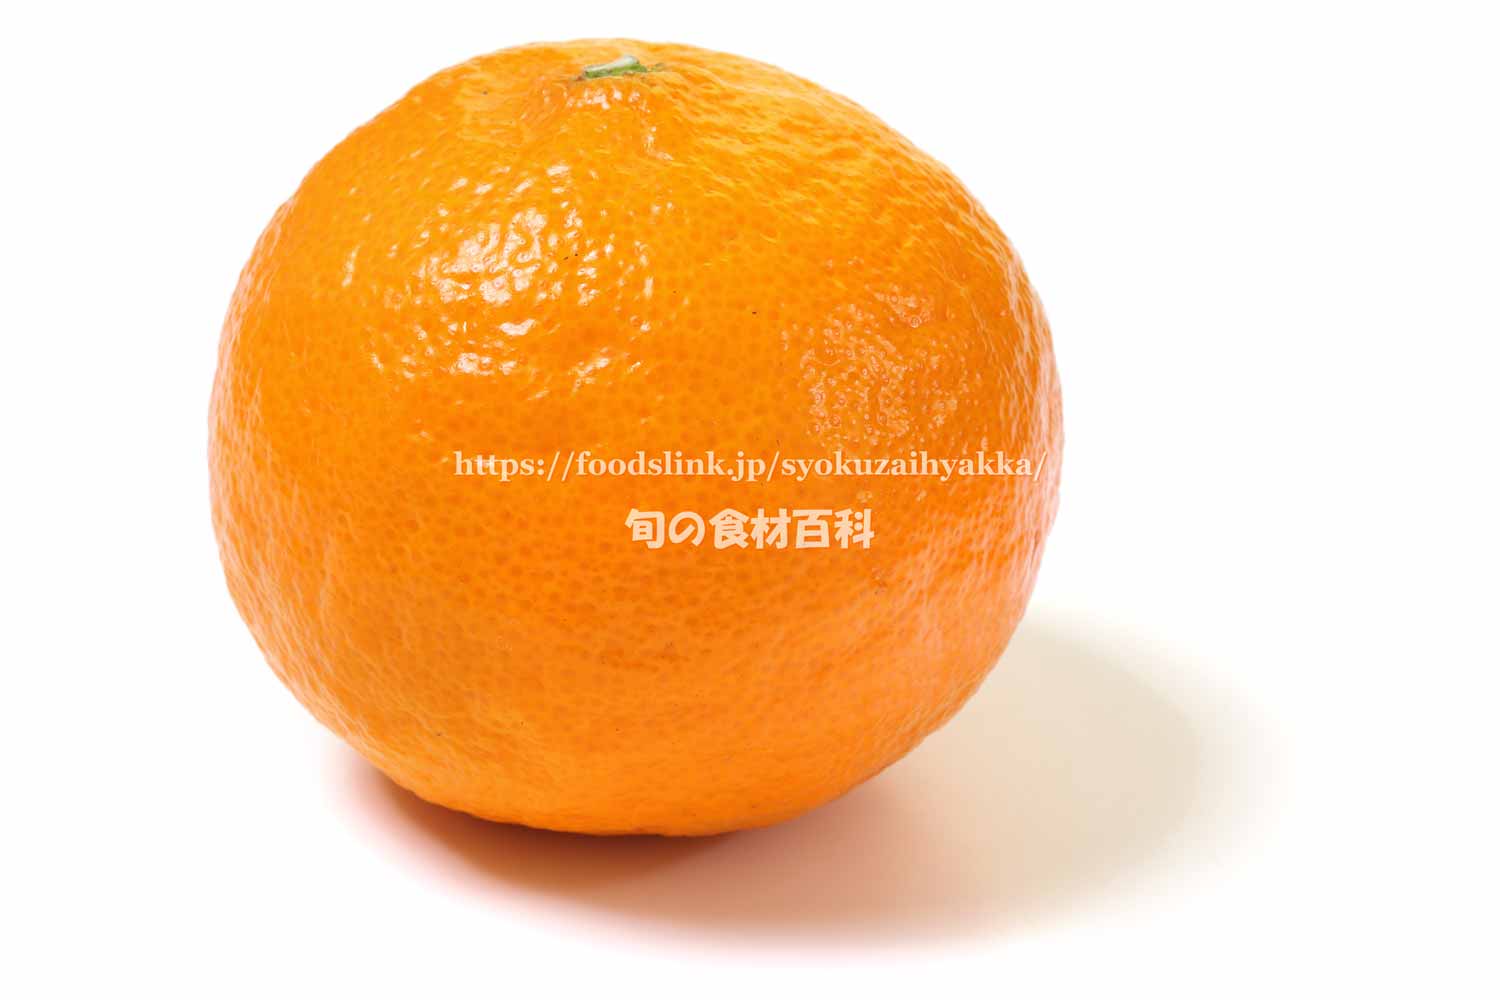 マンダリン オレンジ